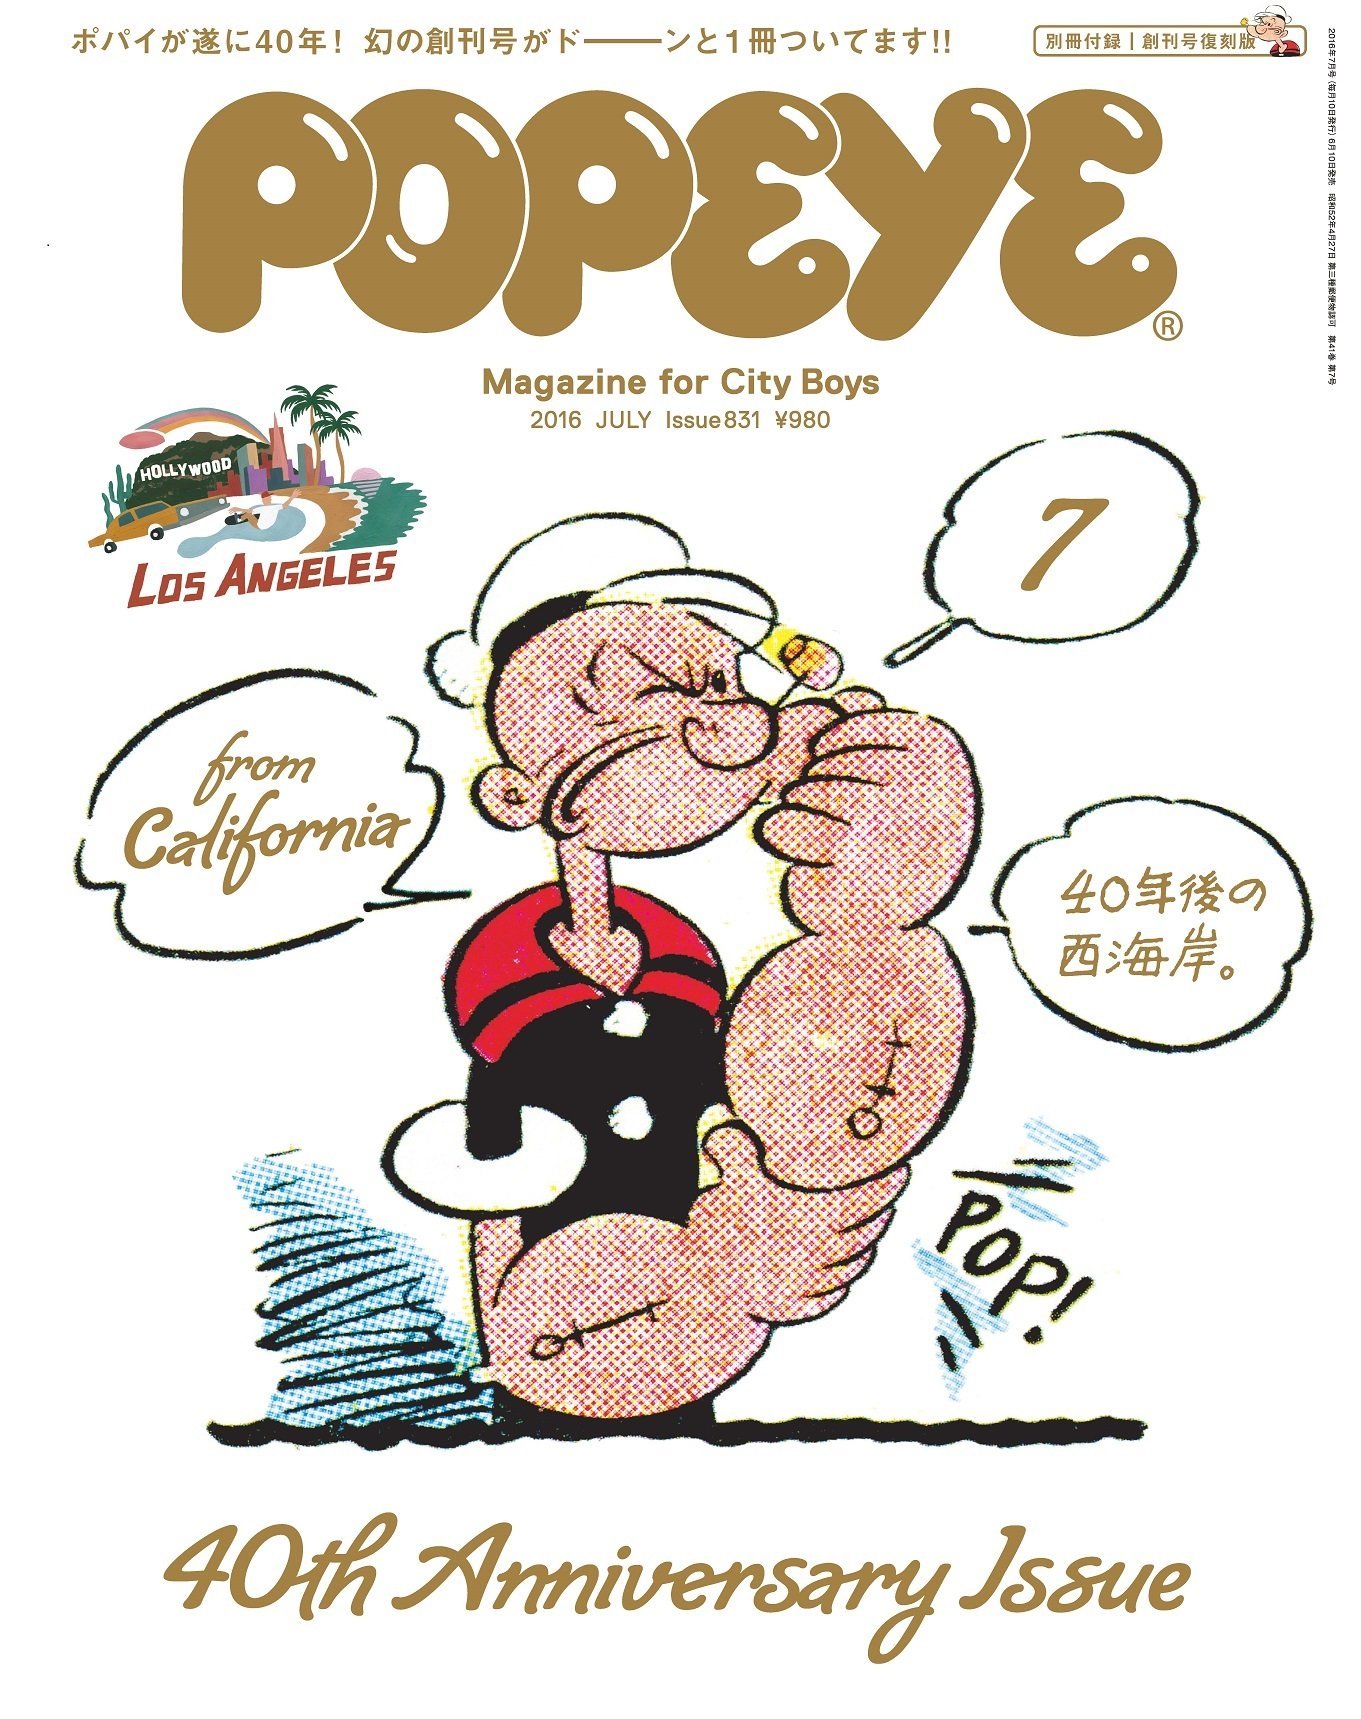 雑誌『popeye』40周年企画、付録は創刊号復刻版！特別番組も I Bought